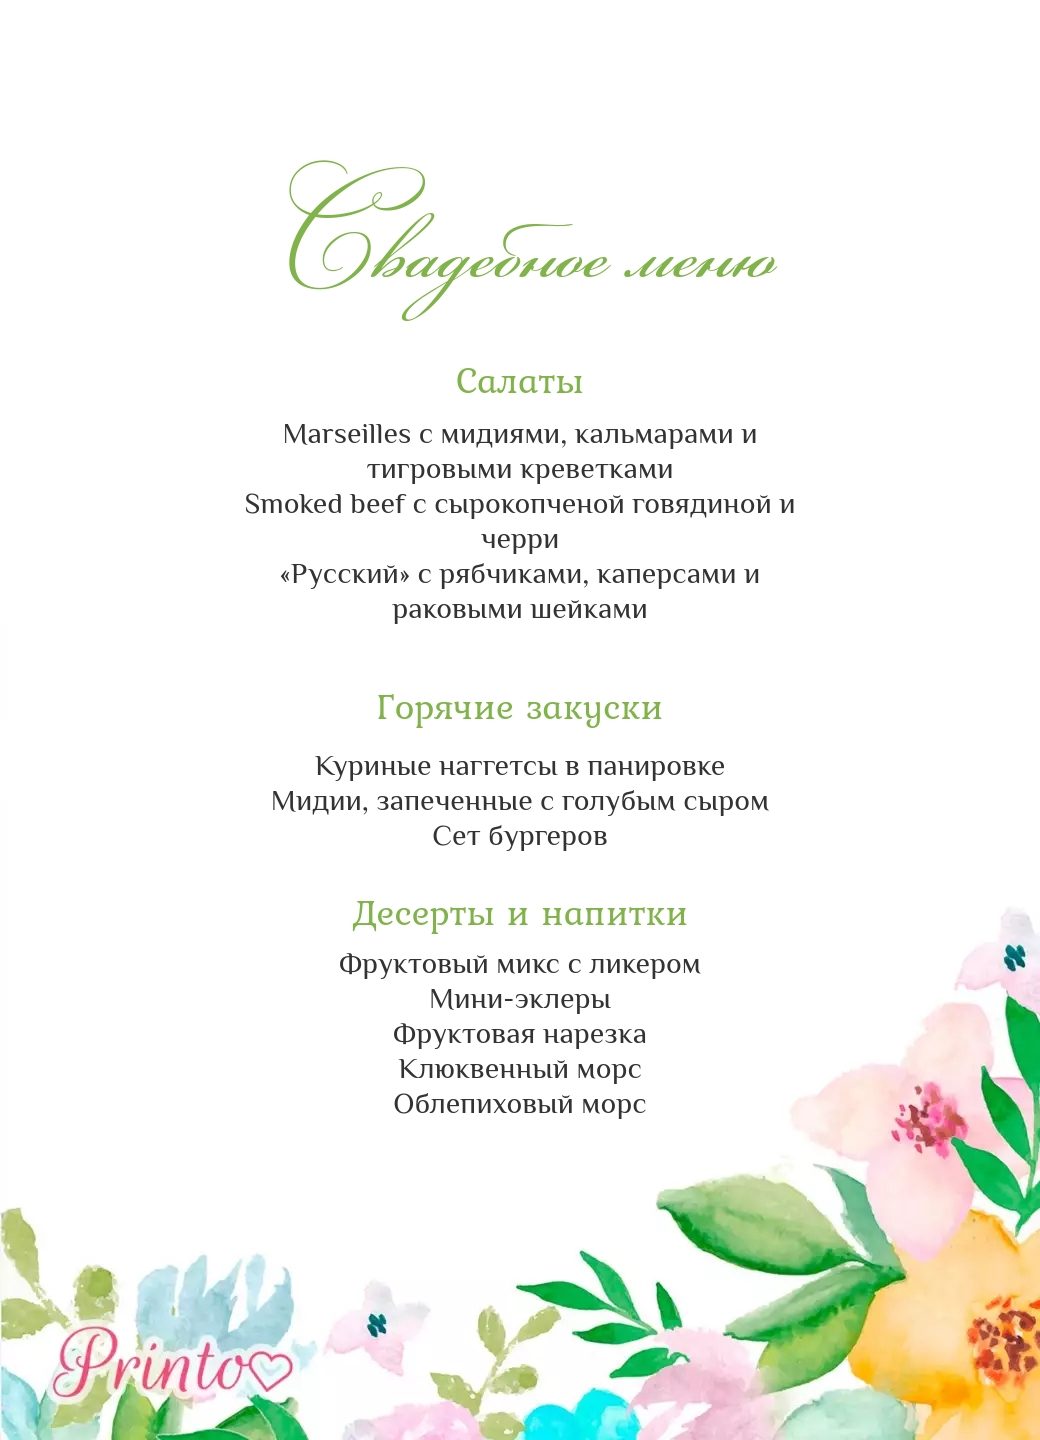 Шаблон свадебного меню "Дыхание весны"